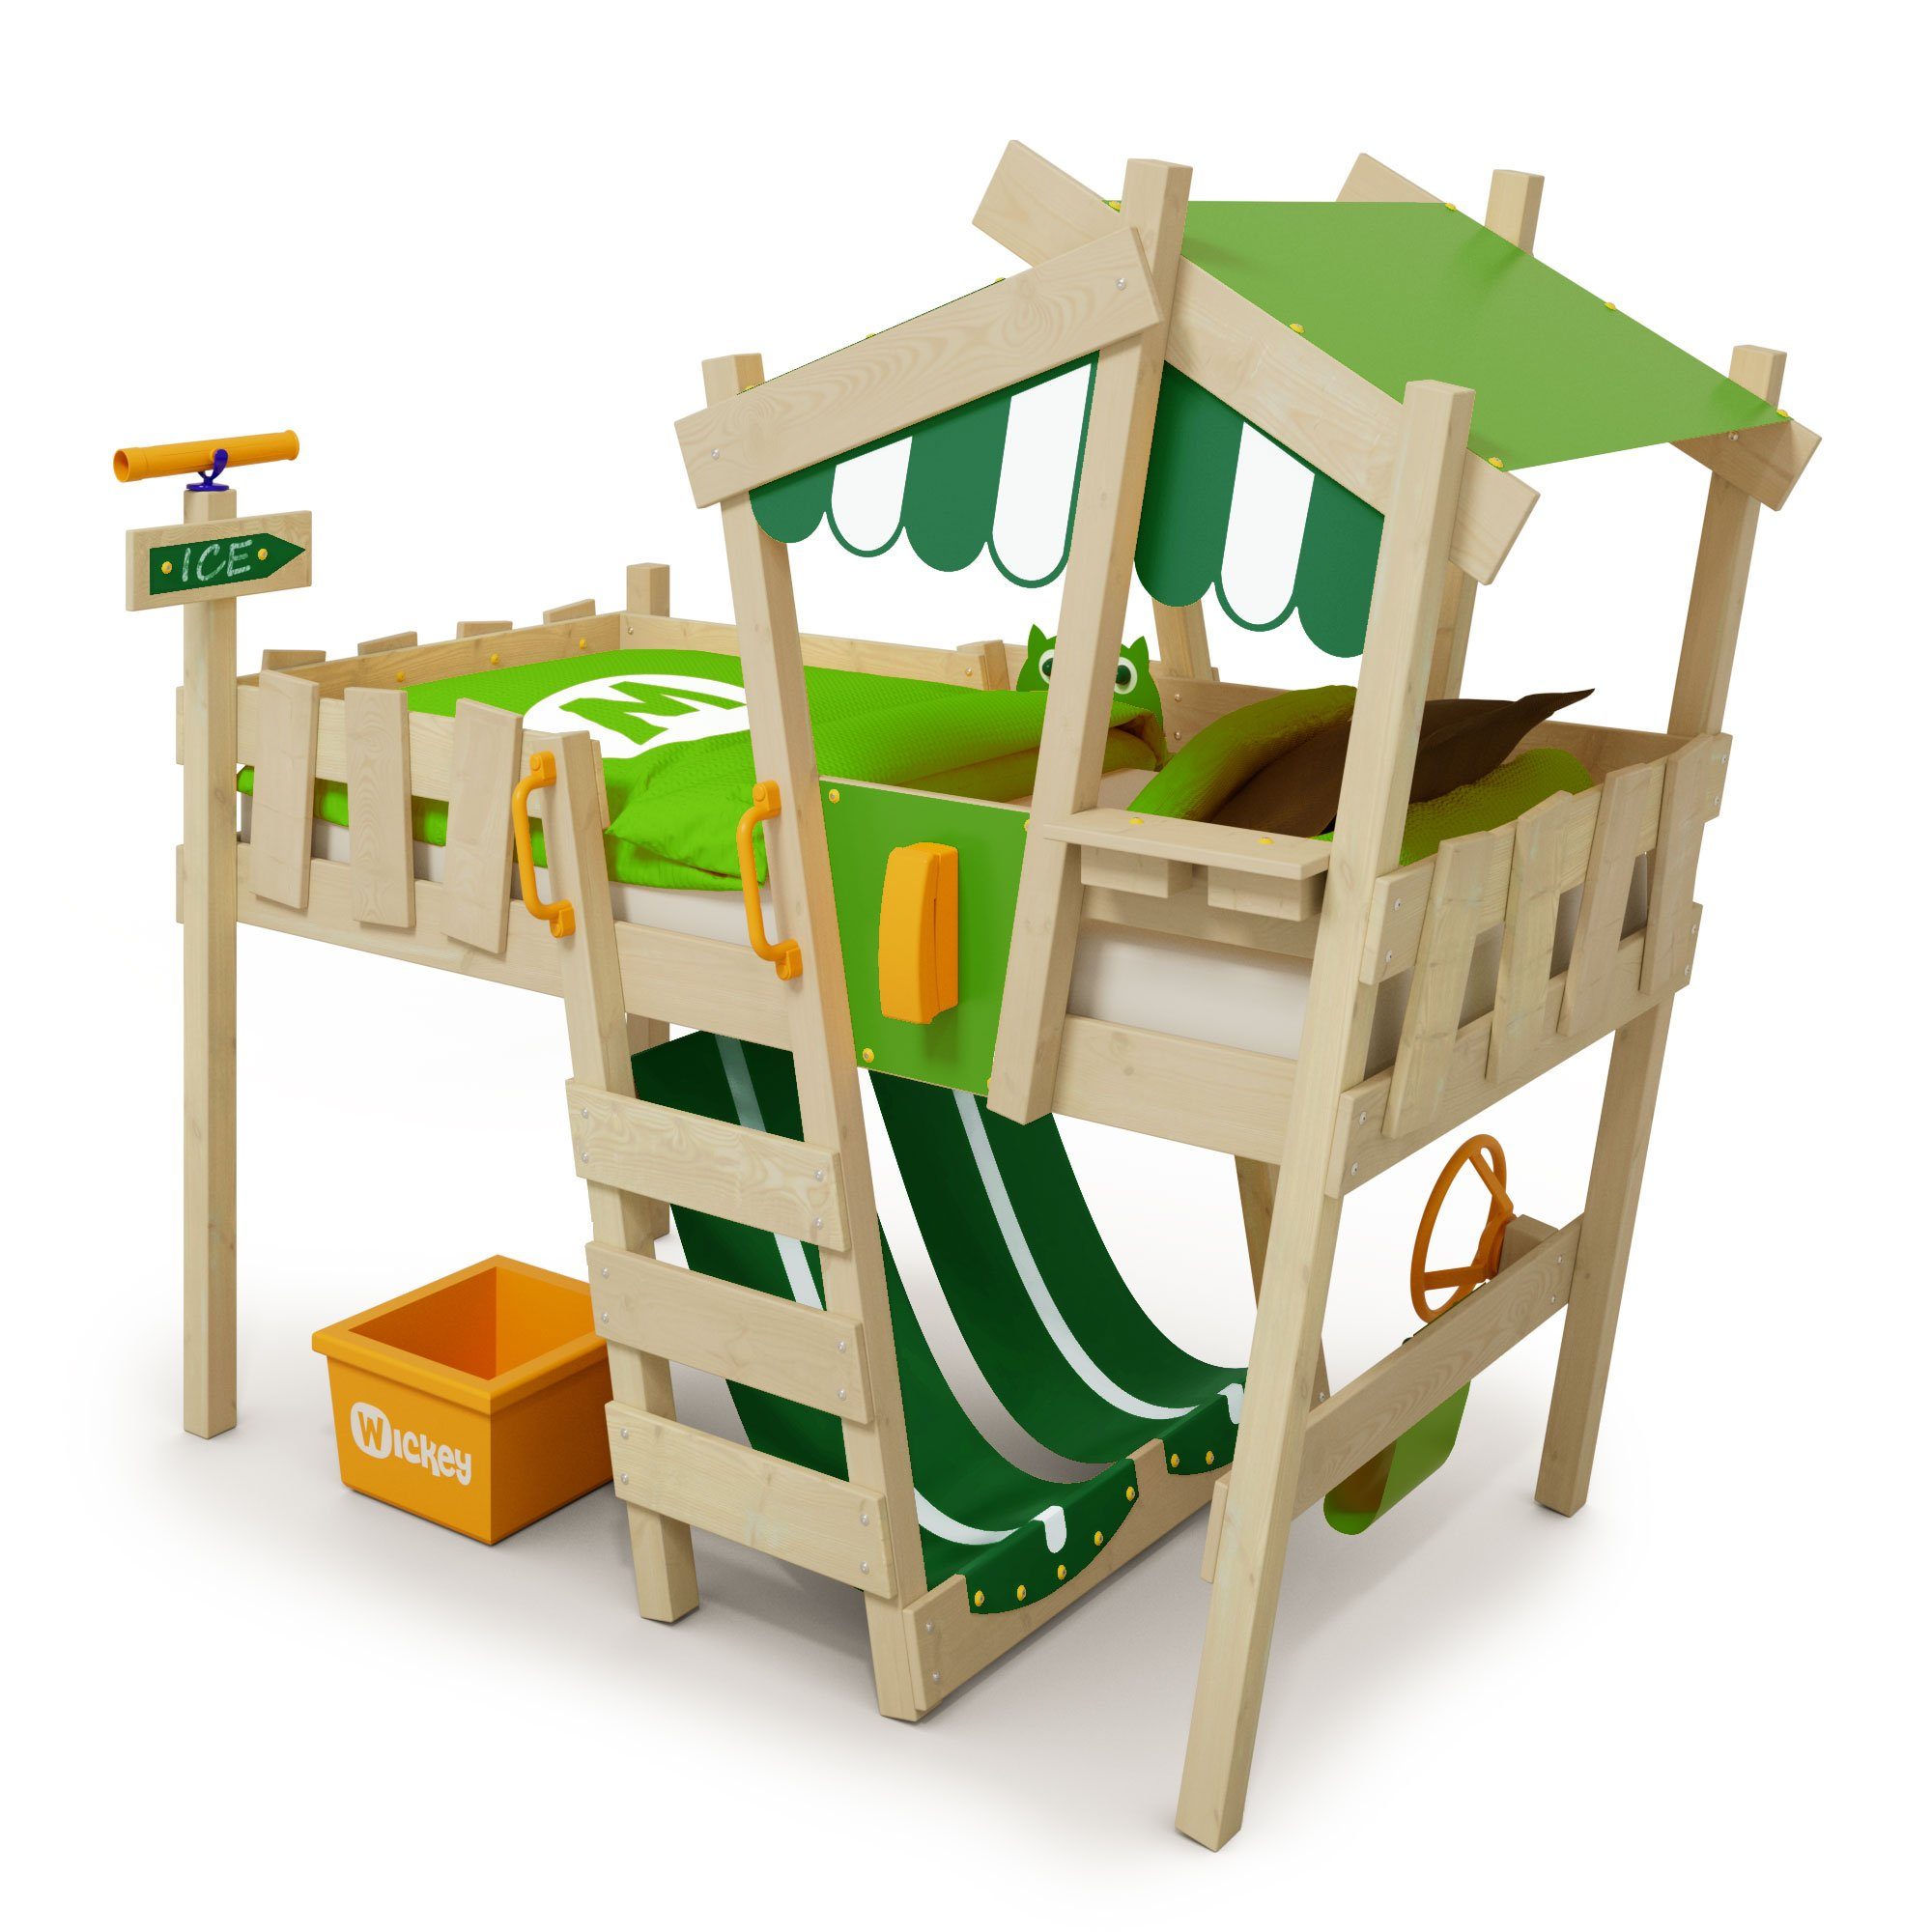 Wickey Kinderbett Crazy Hutty - Spielbett 90 x 200 cm, Etagenbett (Holzpaket aus Pfosten und Brettern, Spielbett für Kinder), massivholzbett Grün/Apfelgrün